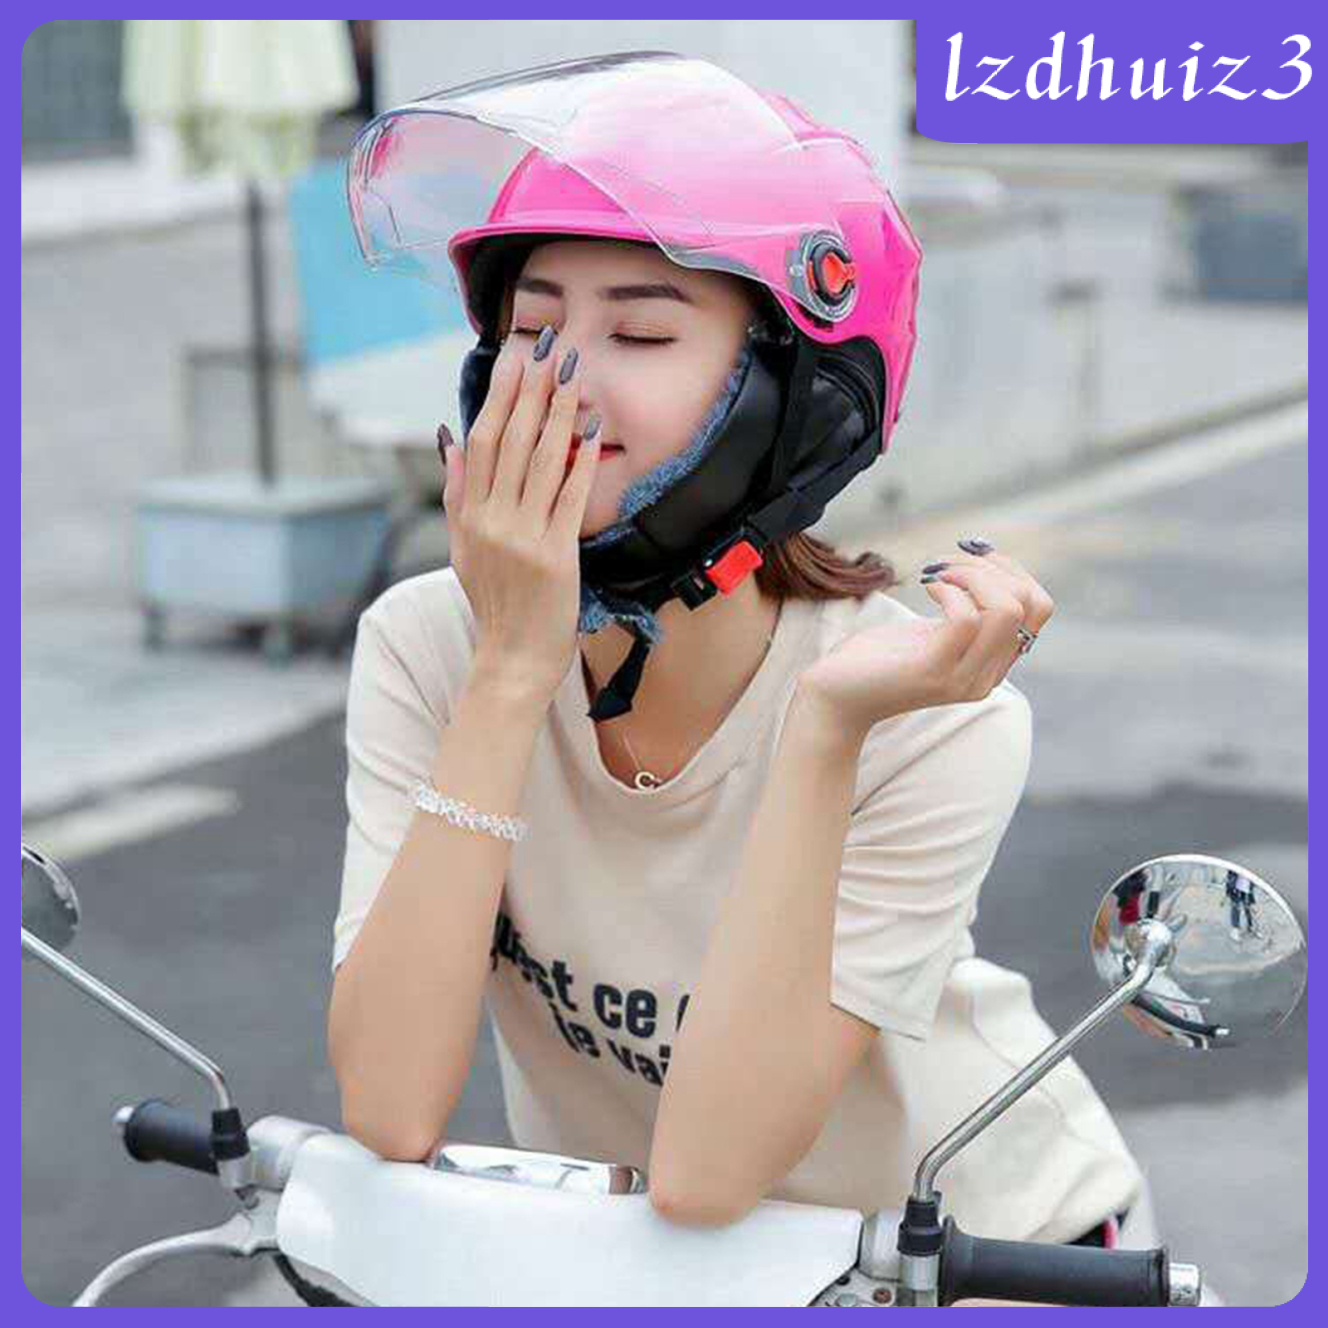 Mũ bảo hiểm có nắp lật lên phía trước bảo vệ toàn diện đầu khi đi xe đạp xe máy hoặc những môn thể thao ngoài trời